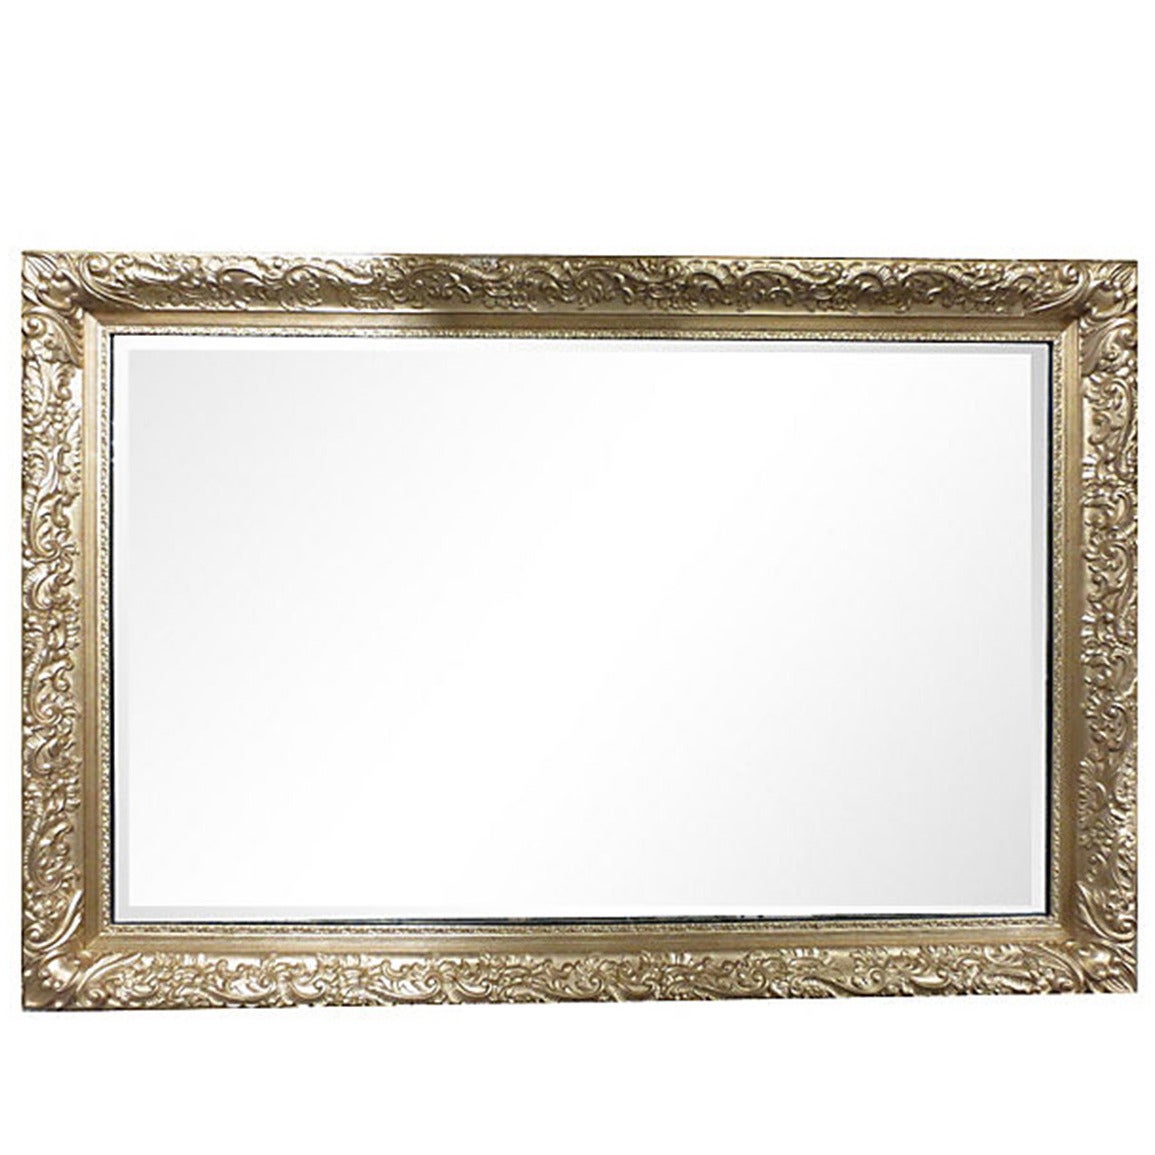 Mural Size Rectangular Gilt Frame Mirror For Sale